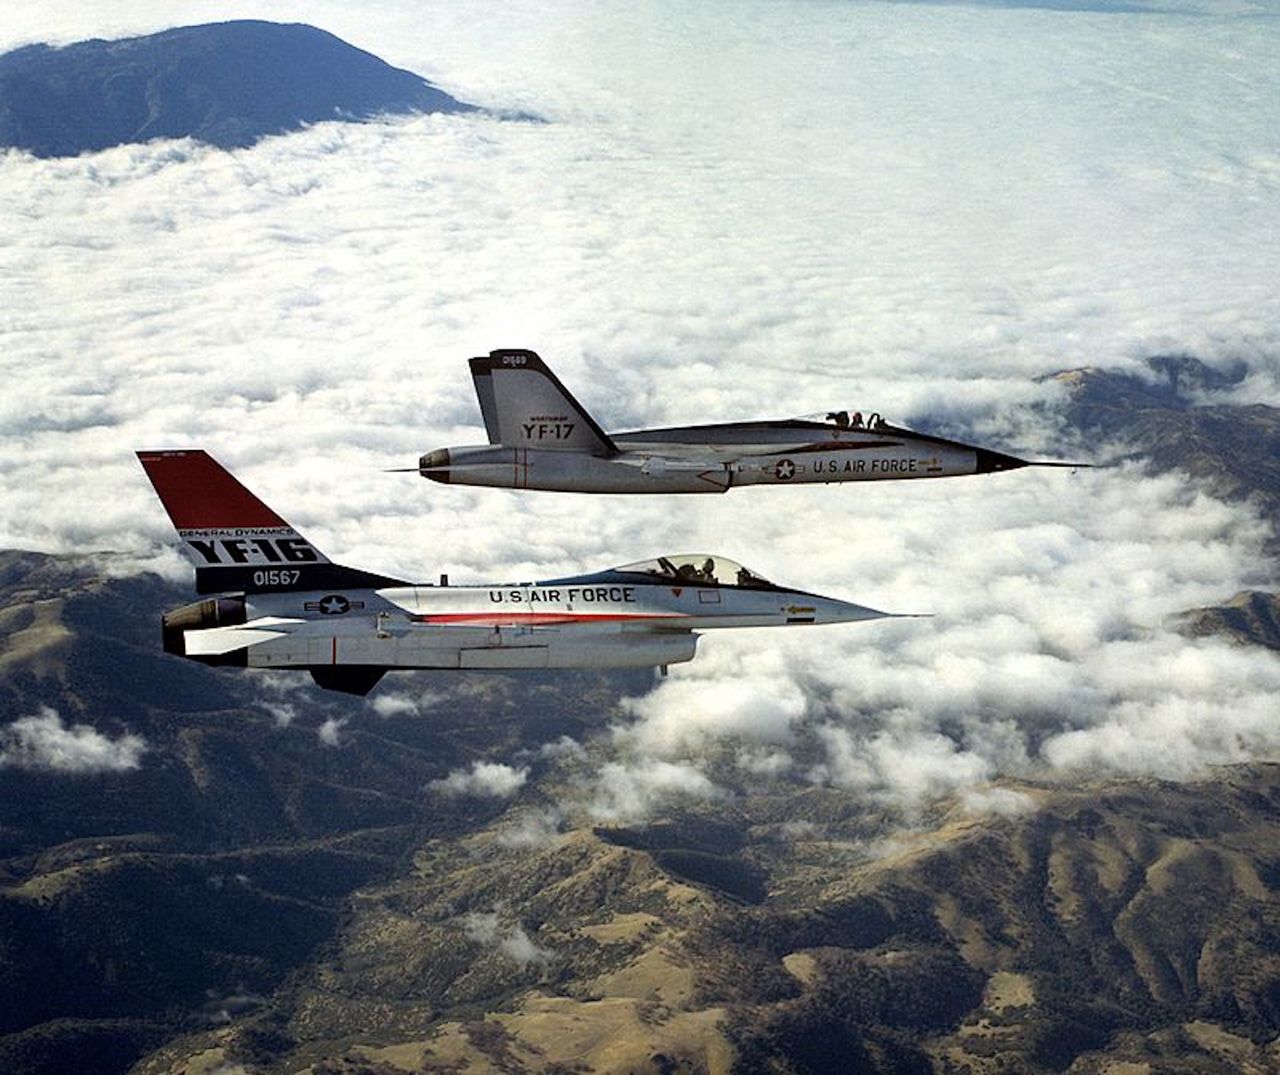 YF-17 (późniejszy F-18) i YF-16 (późniejszy F-16) - eksperymentalne konstrukcje konkurujące o zamówienie na lekki myśliwiec